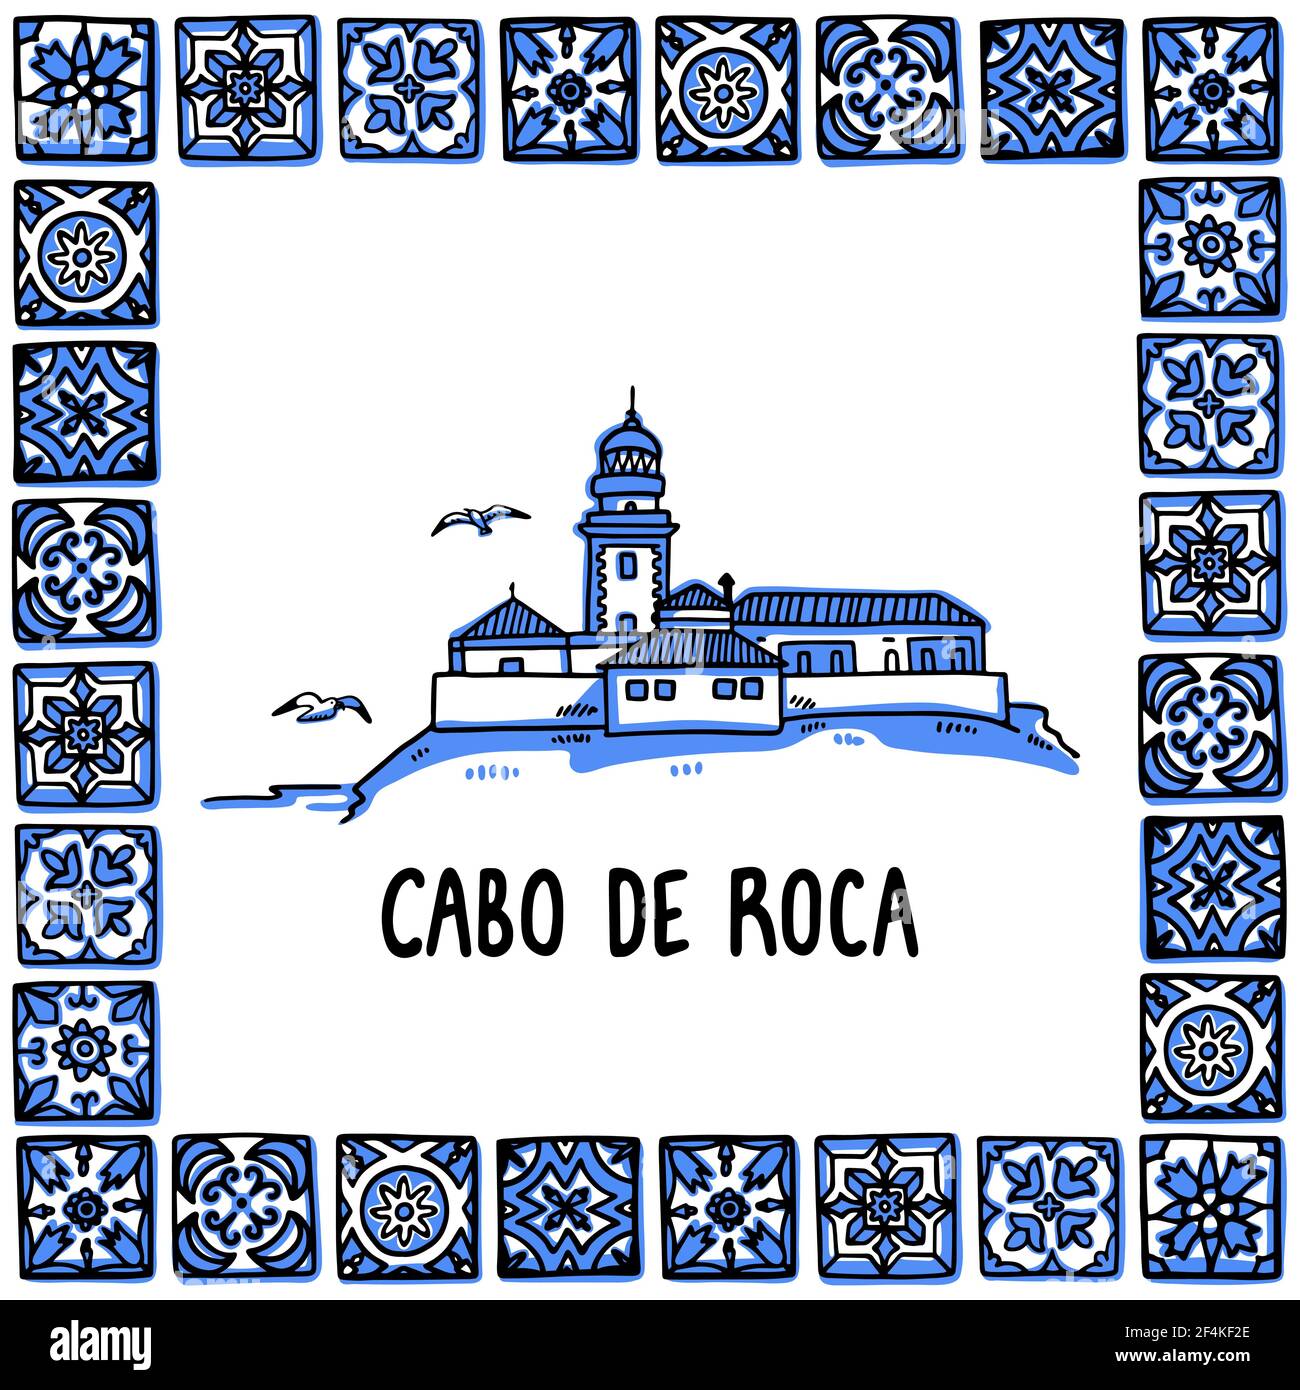 Portogallo luoghi di interesse set. Cabo de Roca, bordo d'Europa. Faro nella cornice di piastrelle portoghesi, azulejo. Illustrazione vettoriale dello stile di schizzo disegnato a mano. Illustrazione Vettoriale